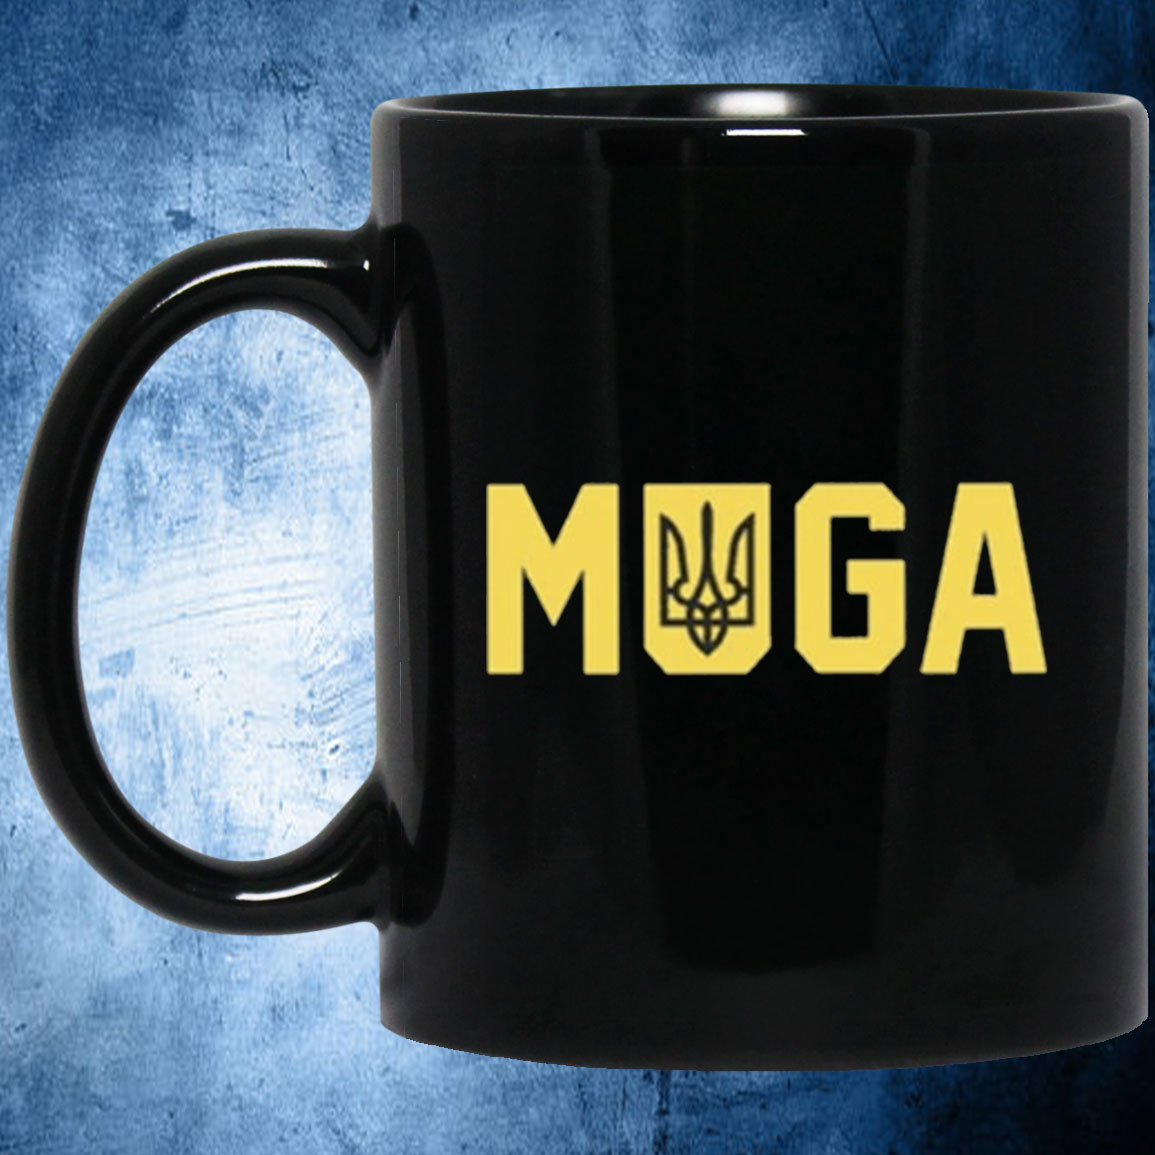 Ukraine Muga Mug